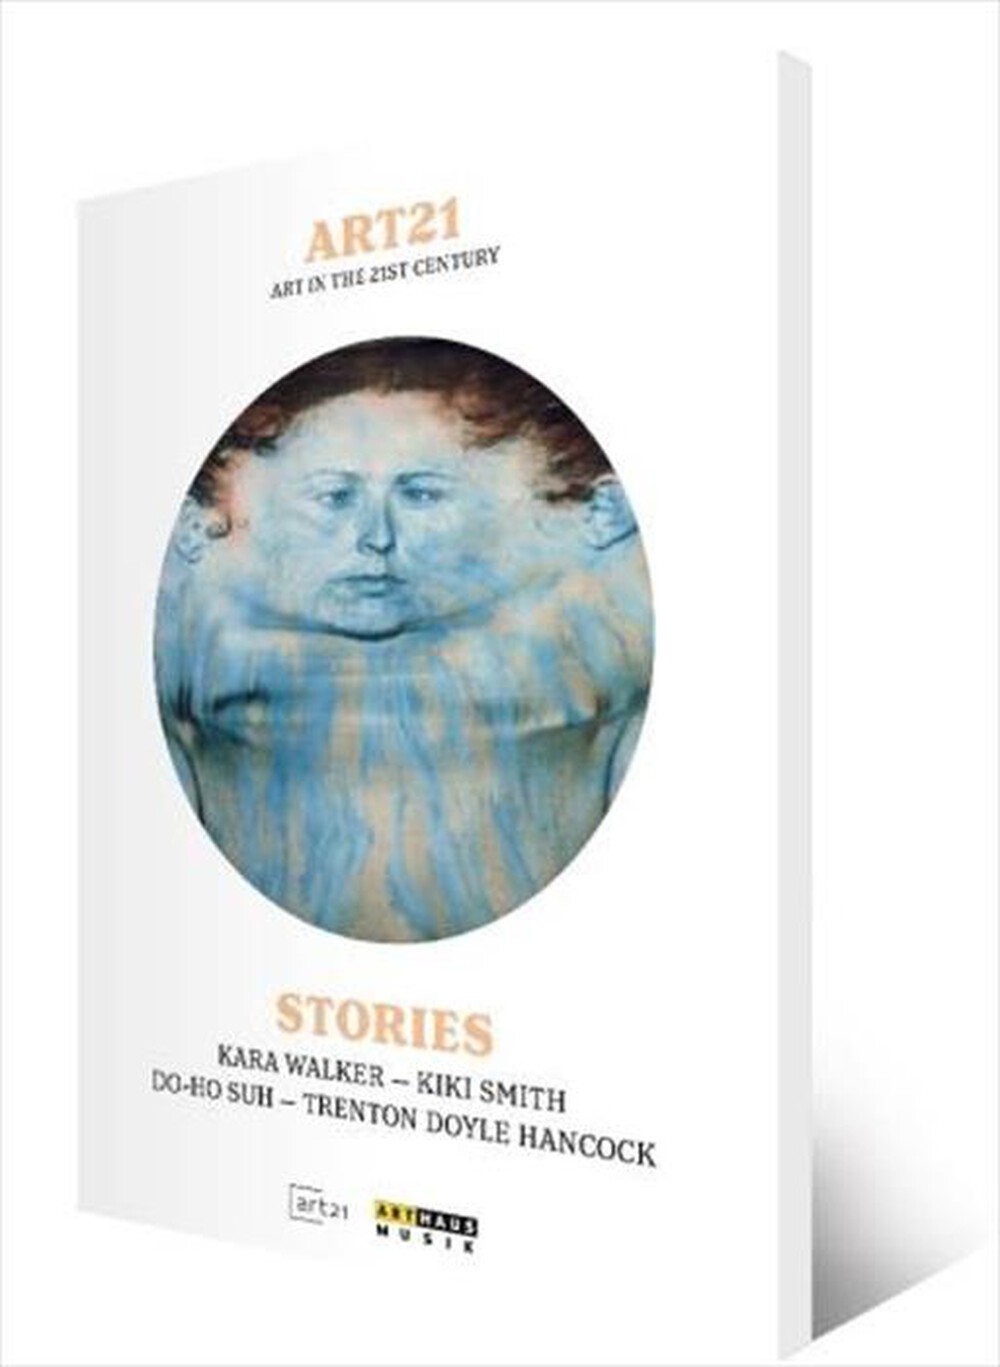 "Arthaus Musik - Art21 - Stories"